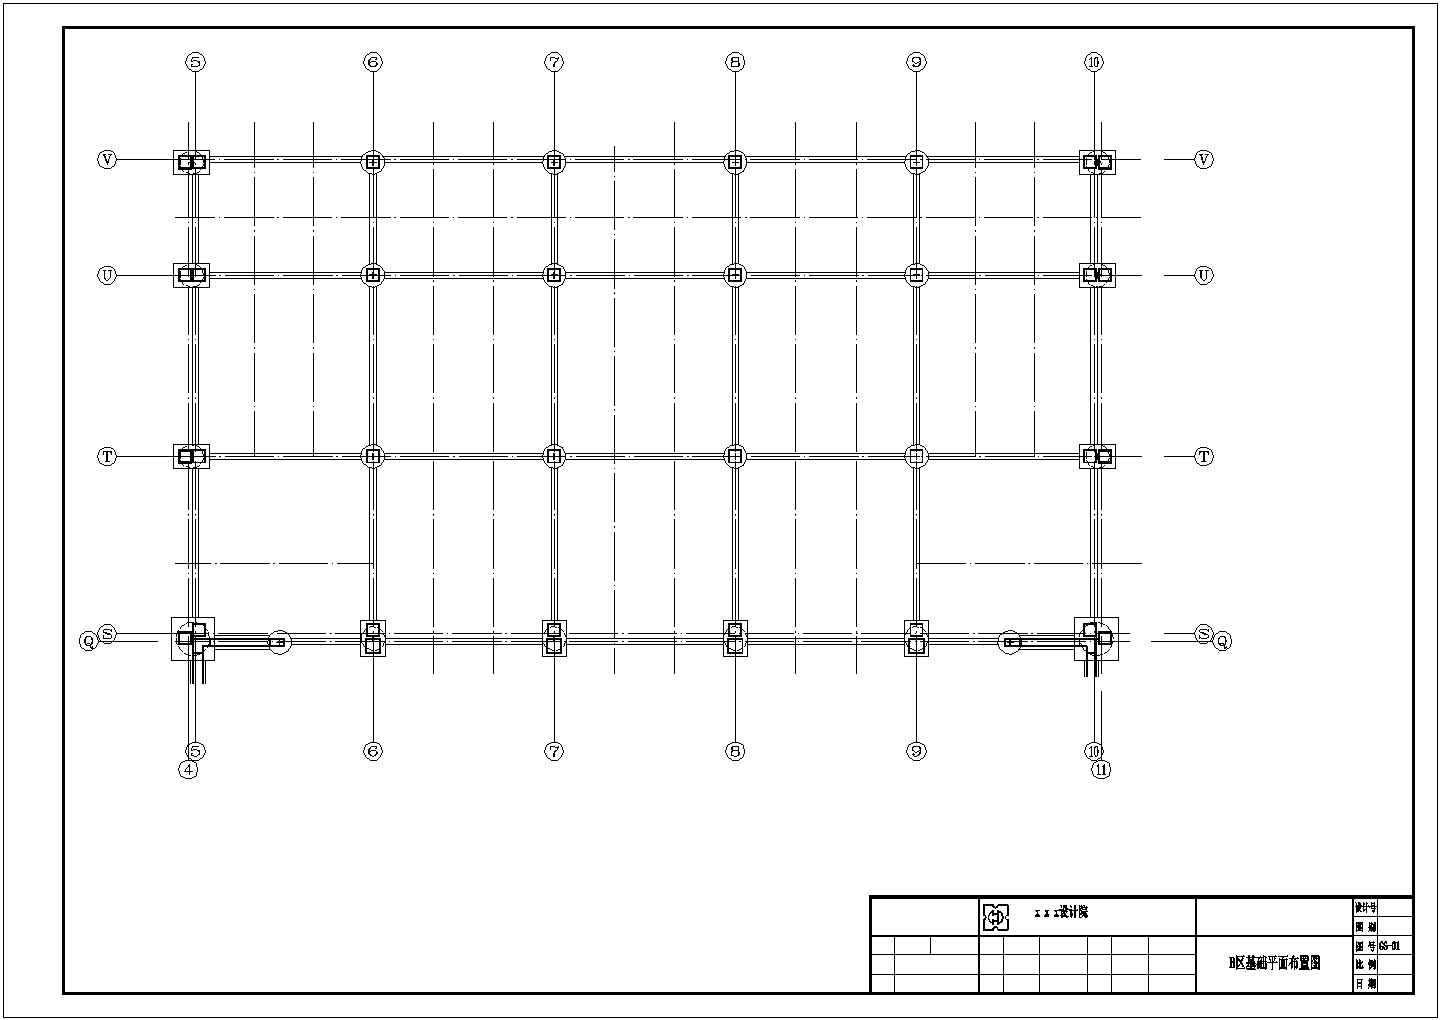 大型框架结构商业区结构设计施工图(A~I区)